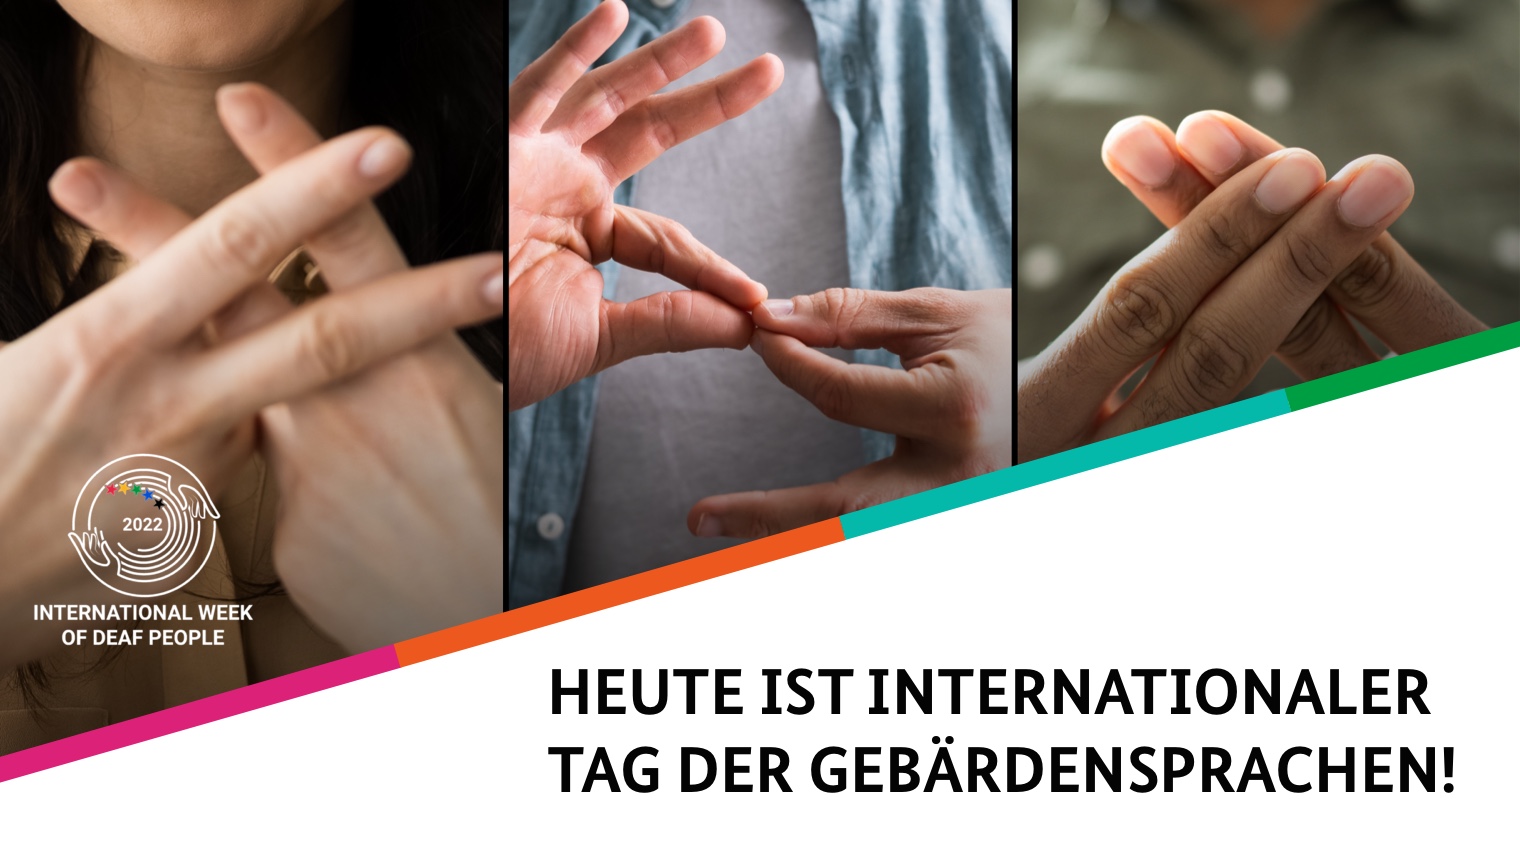 Ein zweigeteiltes Bild. Oben eine Collage aus Händen, die gebärden. Links innerhalb der Collage: Das Logo der International Week of Deaf People. Unten der Bildtext: Heute ist Internationaler Tag der Gebärdensprachen!